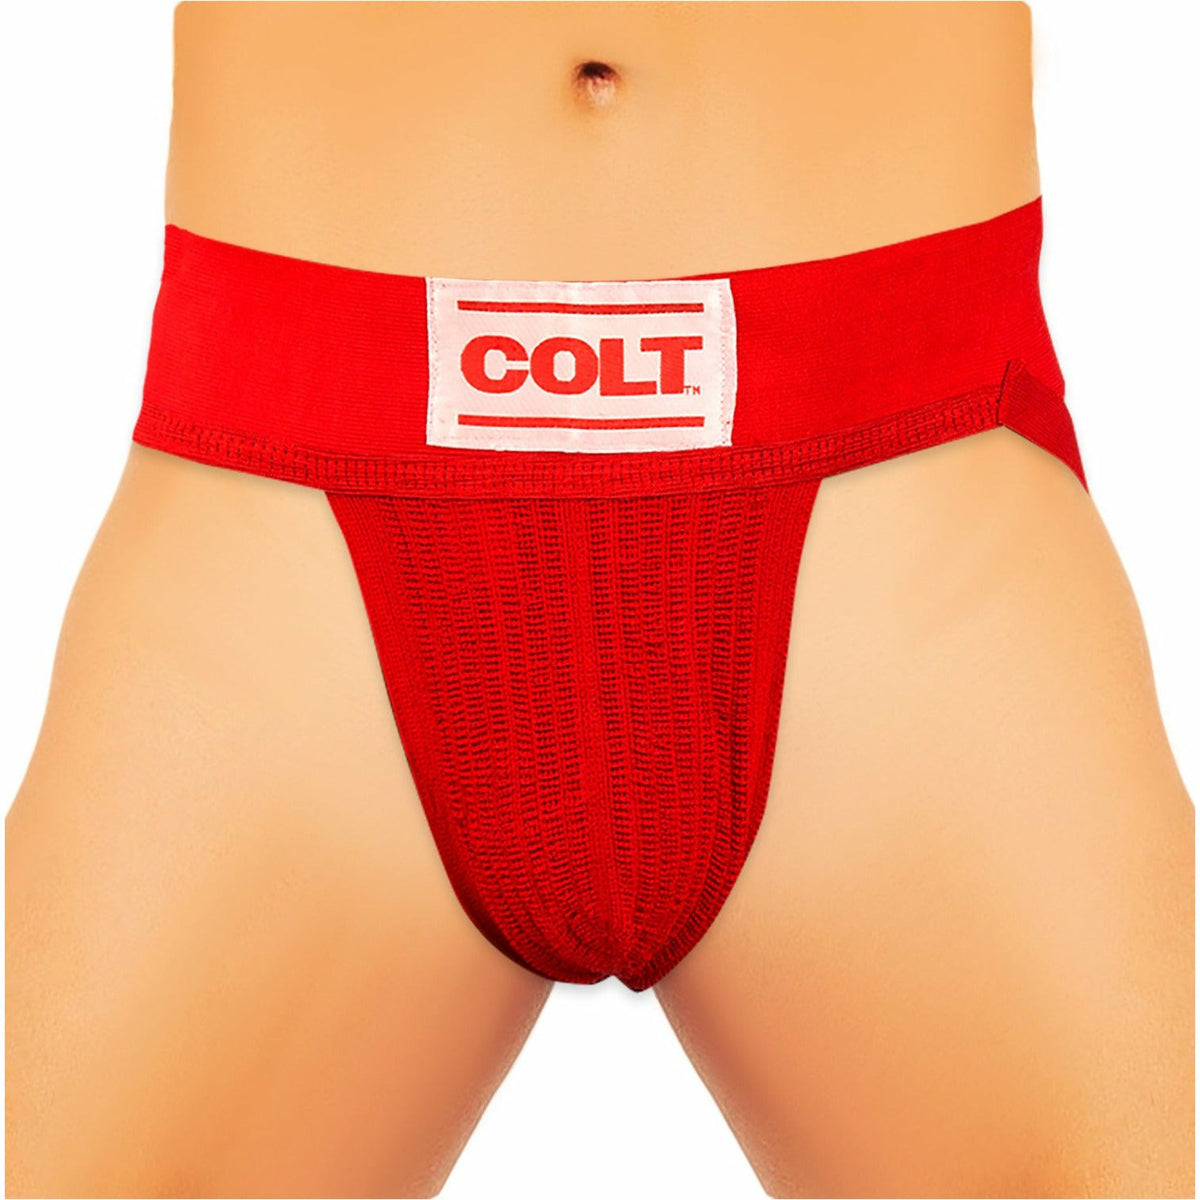 Colt Jockstrap - Red - Medium